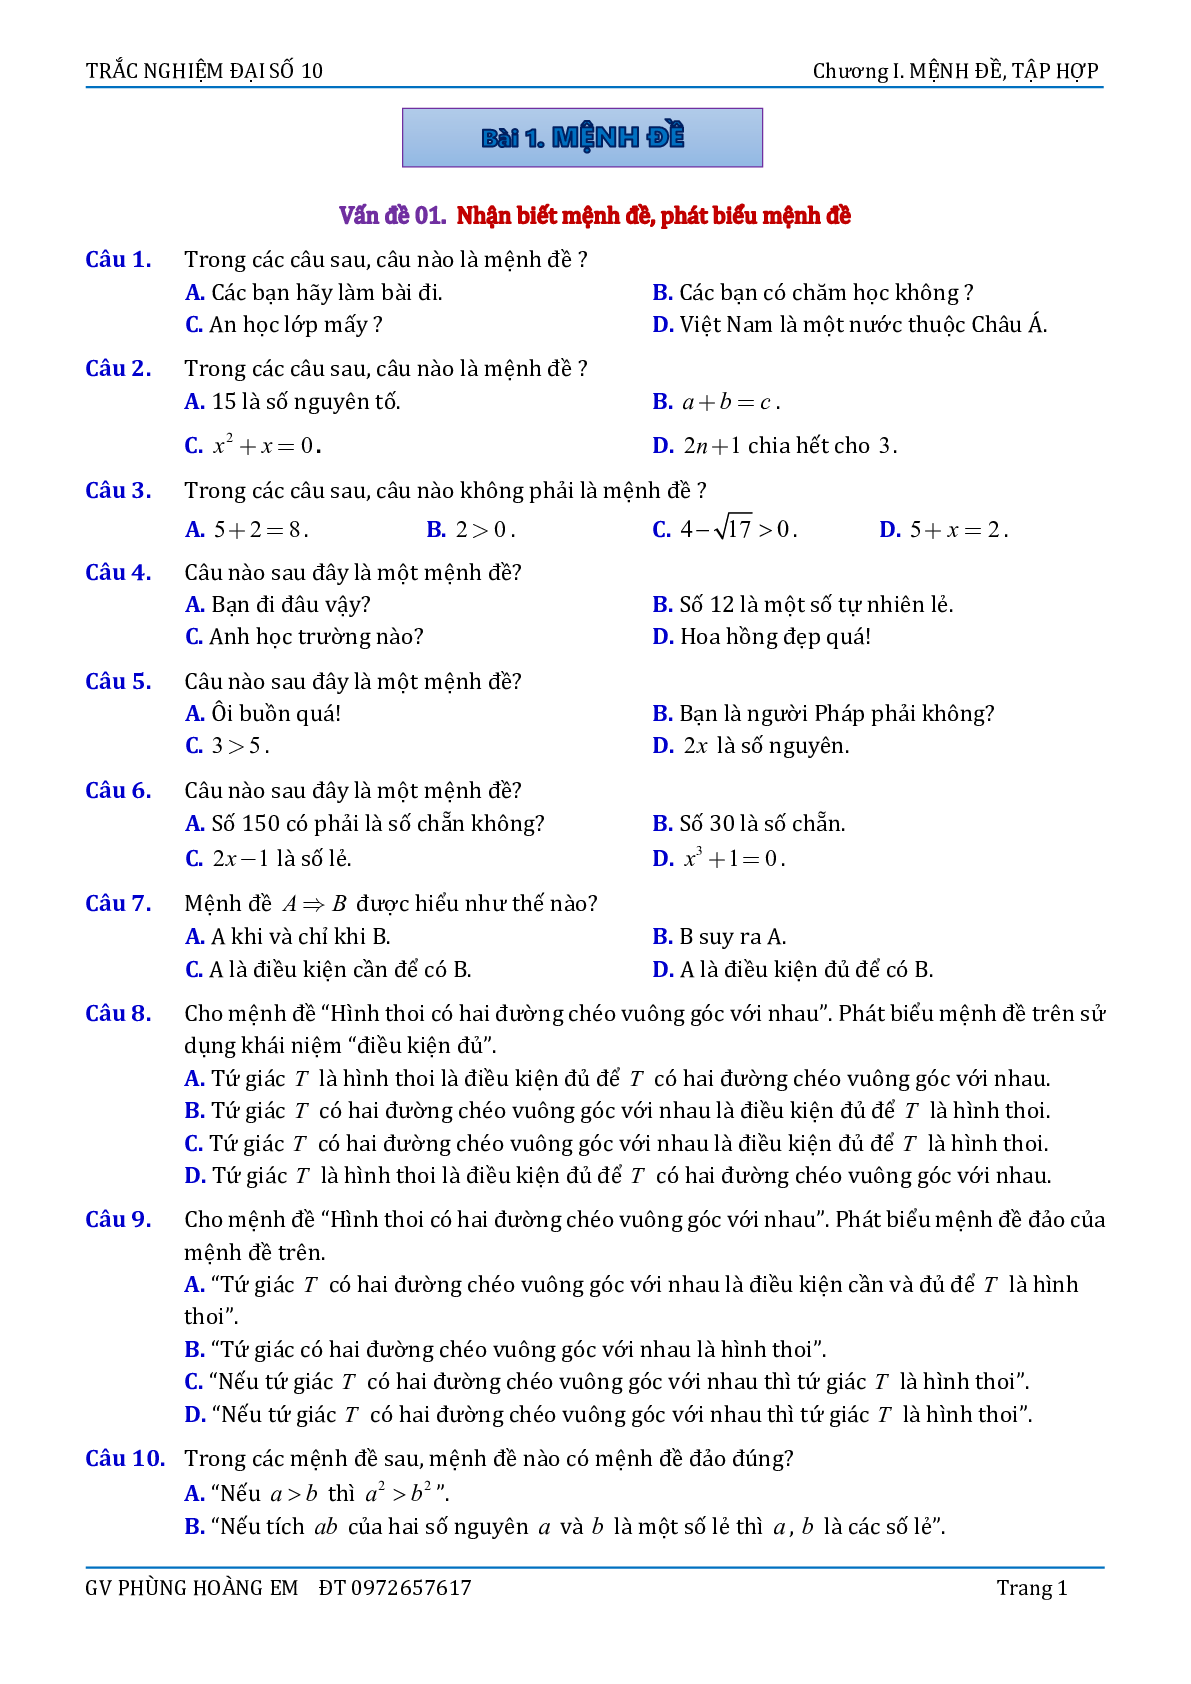 Bài tập trắc nghiệm về mệnh đề và tập hợp - bản 1 (trang 1)